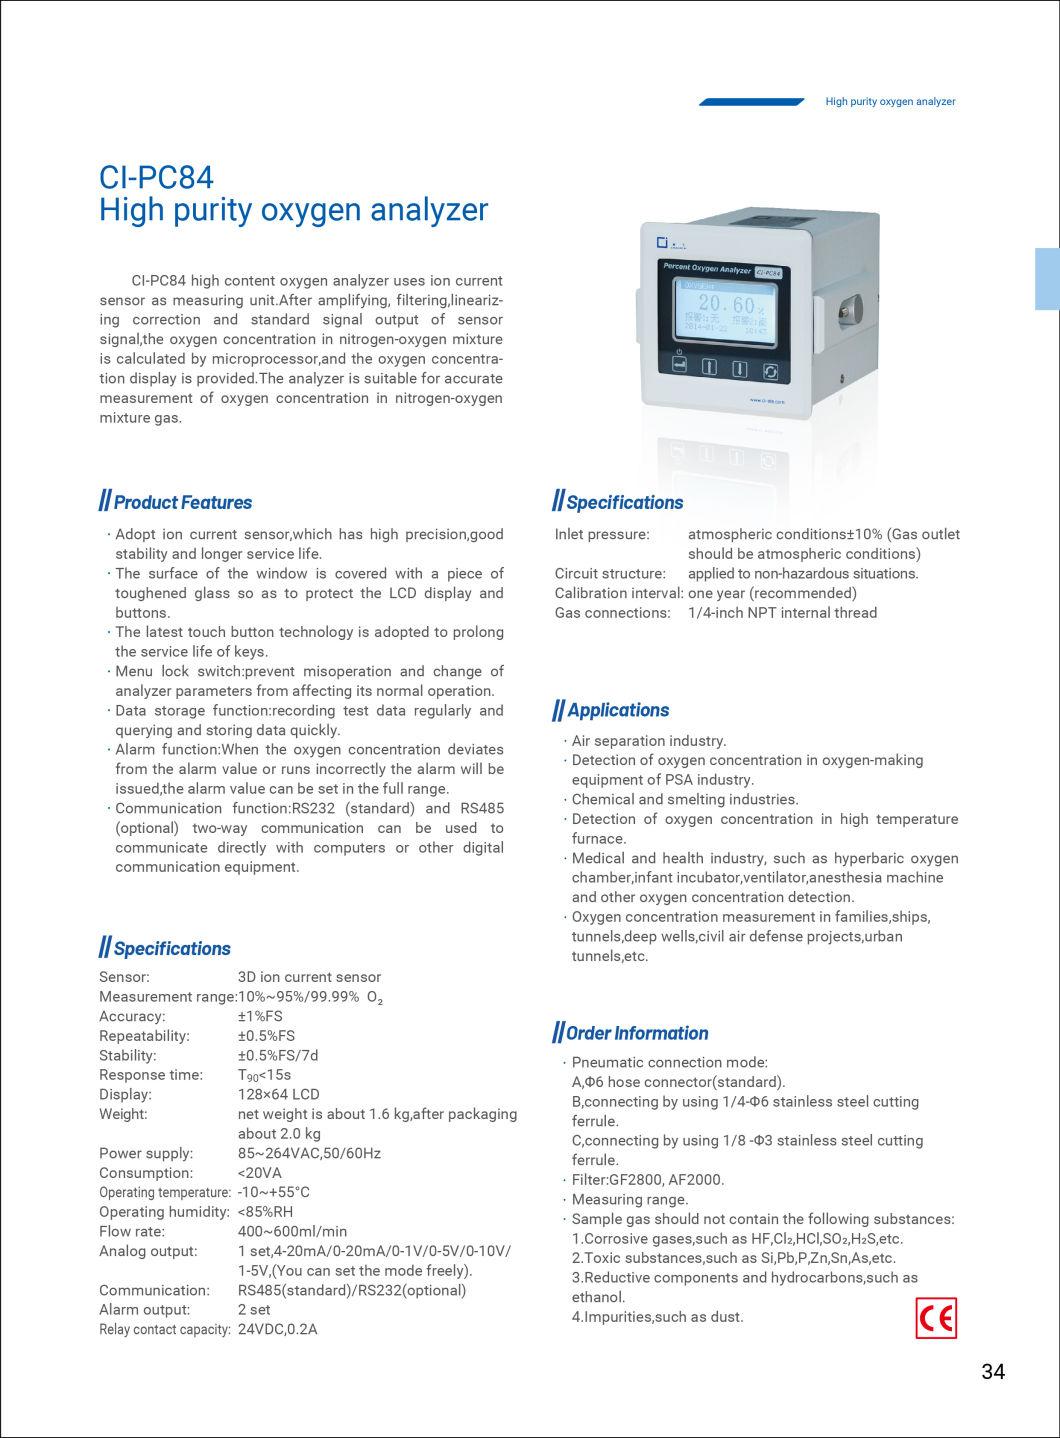 Ci-PC84 High Purity Oxygen Analyzer